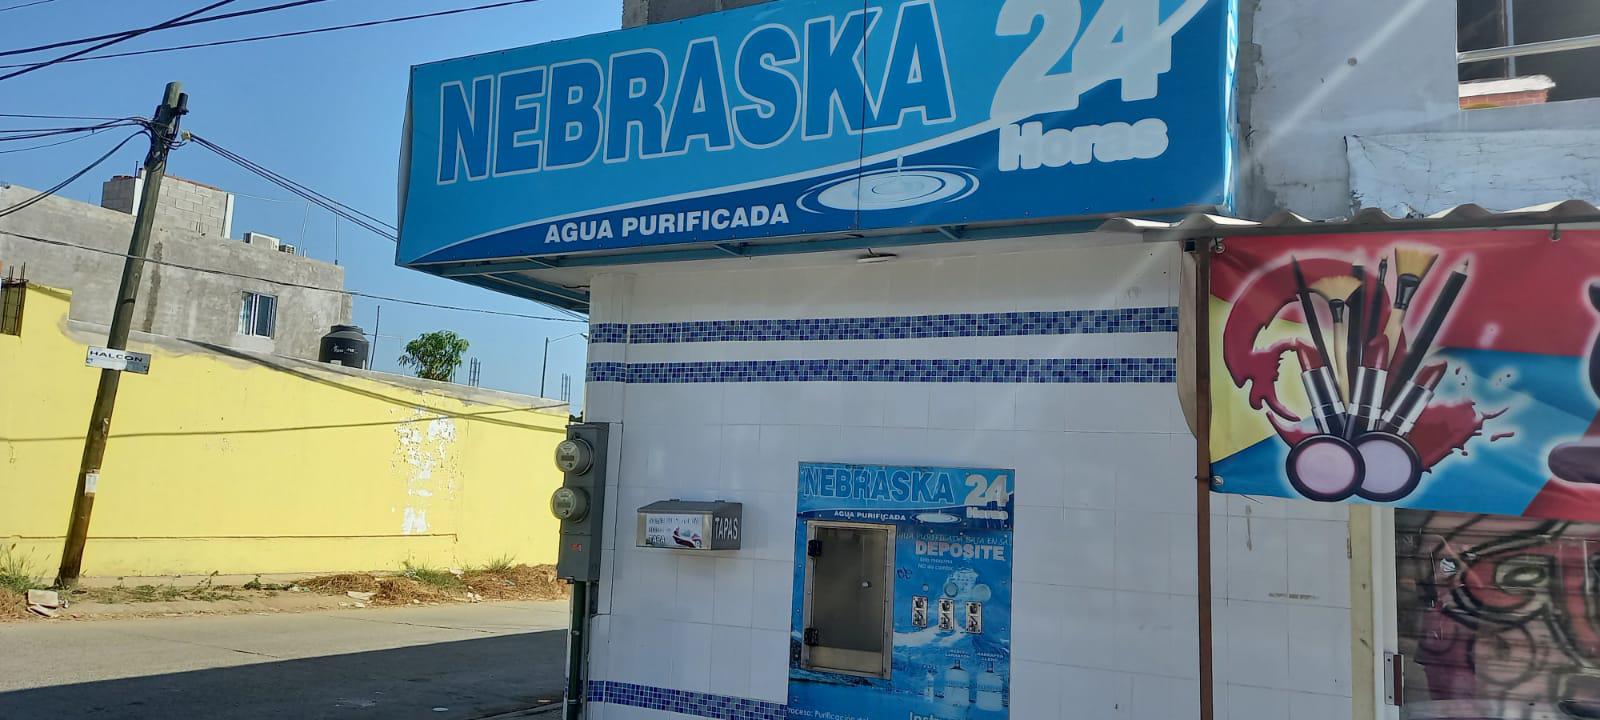 $!Comercios de Mazatlán temen se extienda el desabasto de agua, porque tendrán pérdidas